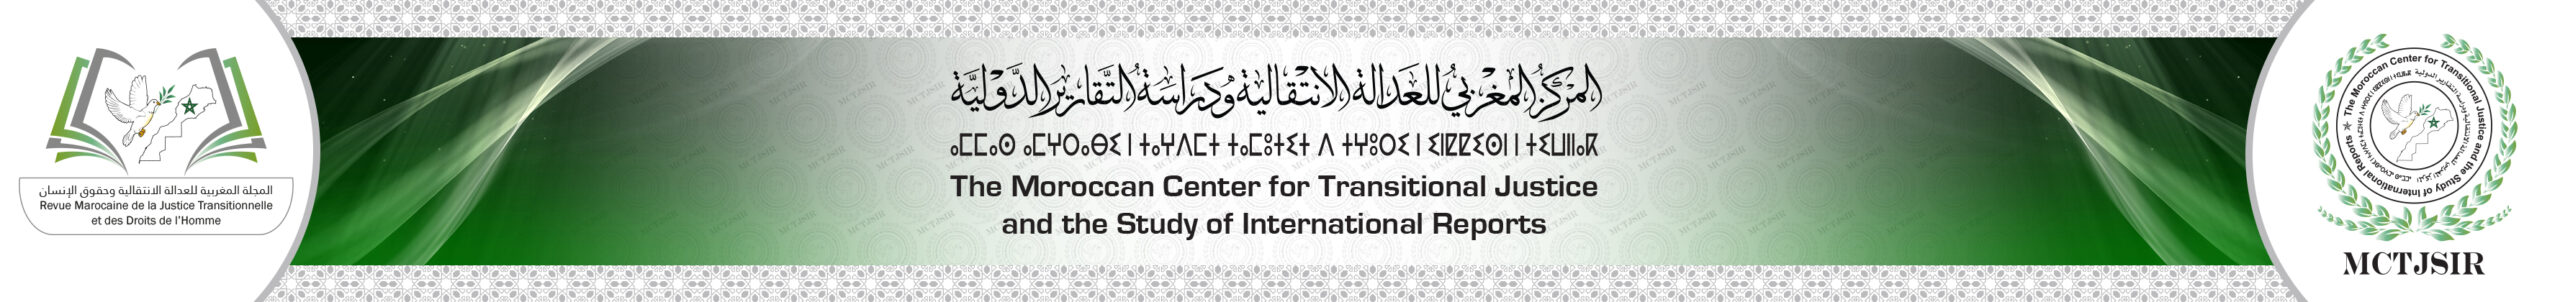 المركز المغربي للعدالة الإنتقالية و دراسة التقارير الدولية